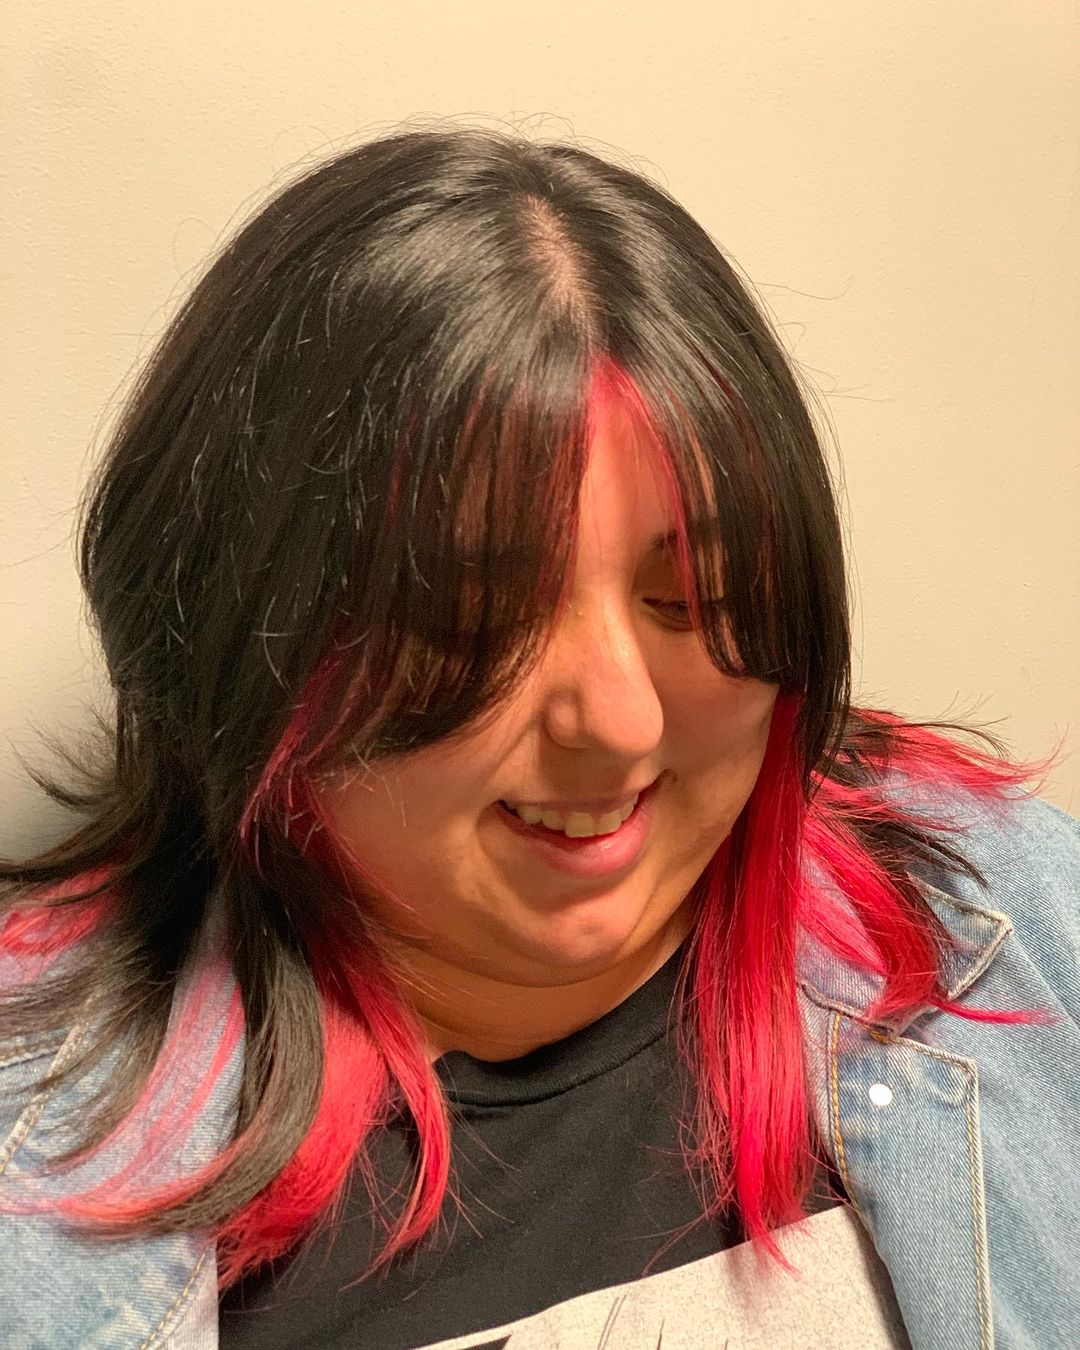 cabelo preto com pontas vermelho-rosadas